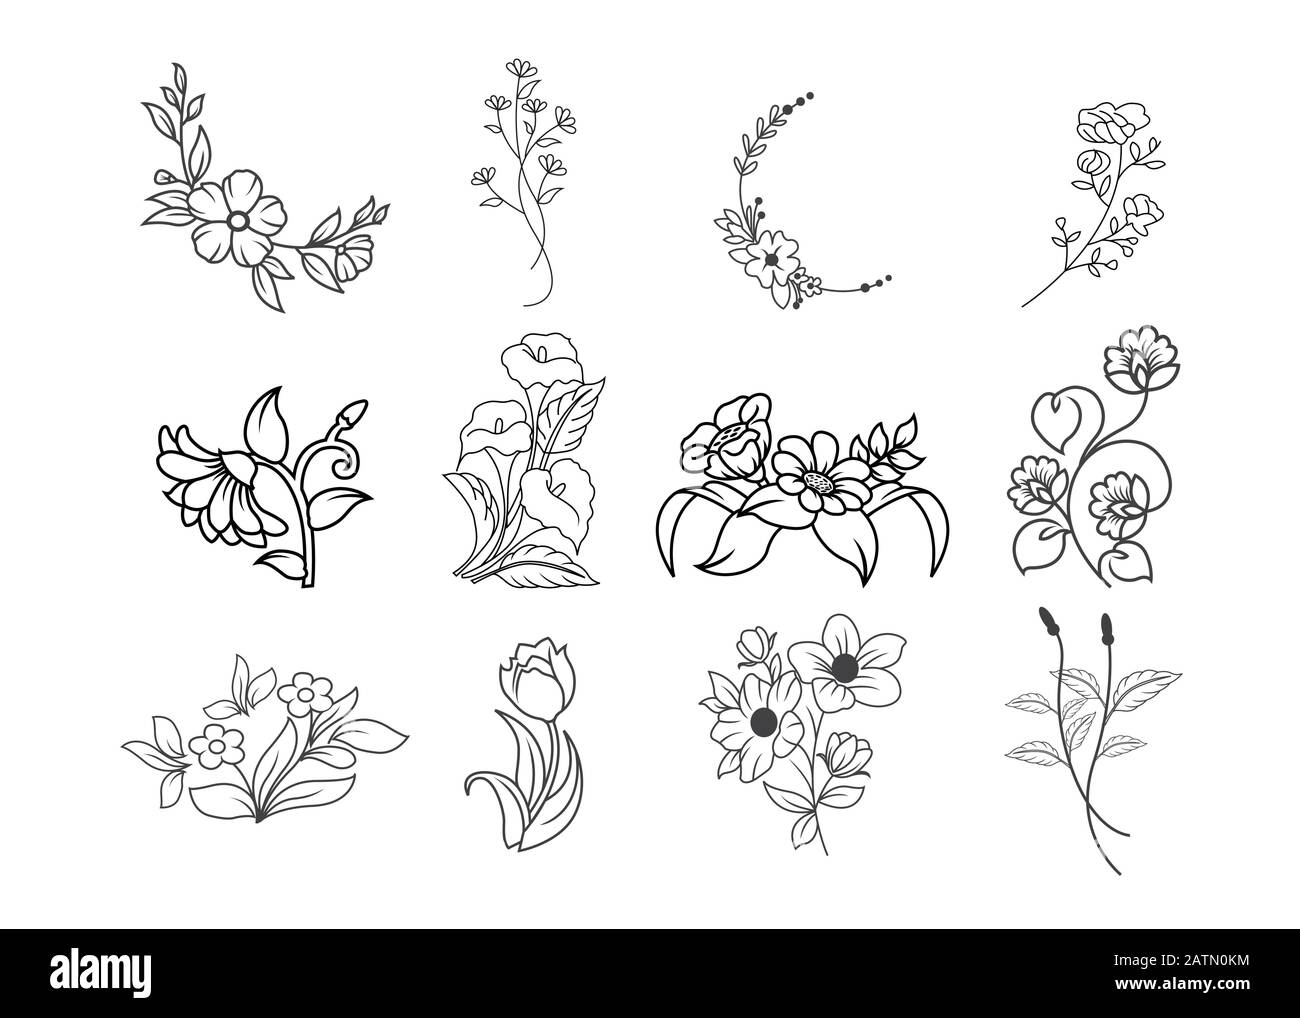 Jeu de vecteurs fleuris de champ d'été dessiné à la main. Illustration du champ floral, fleur sauvage, trait noir blanc Illustration de Vecteur